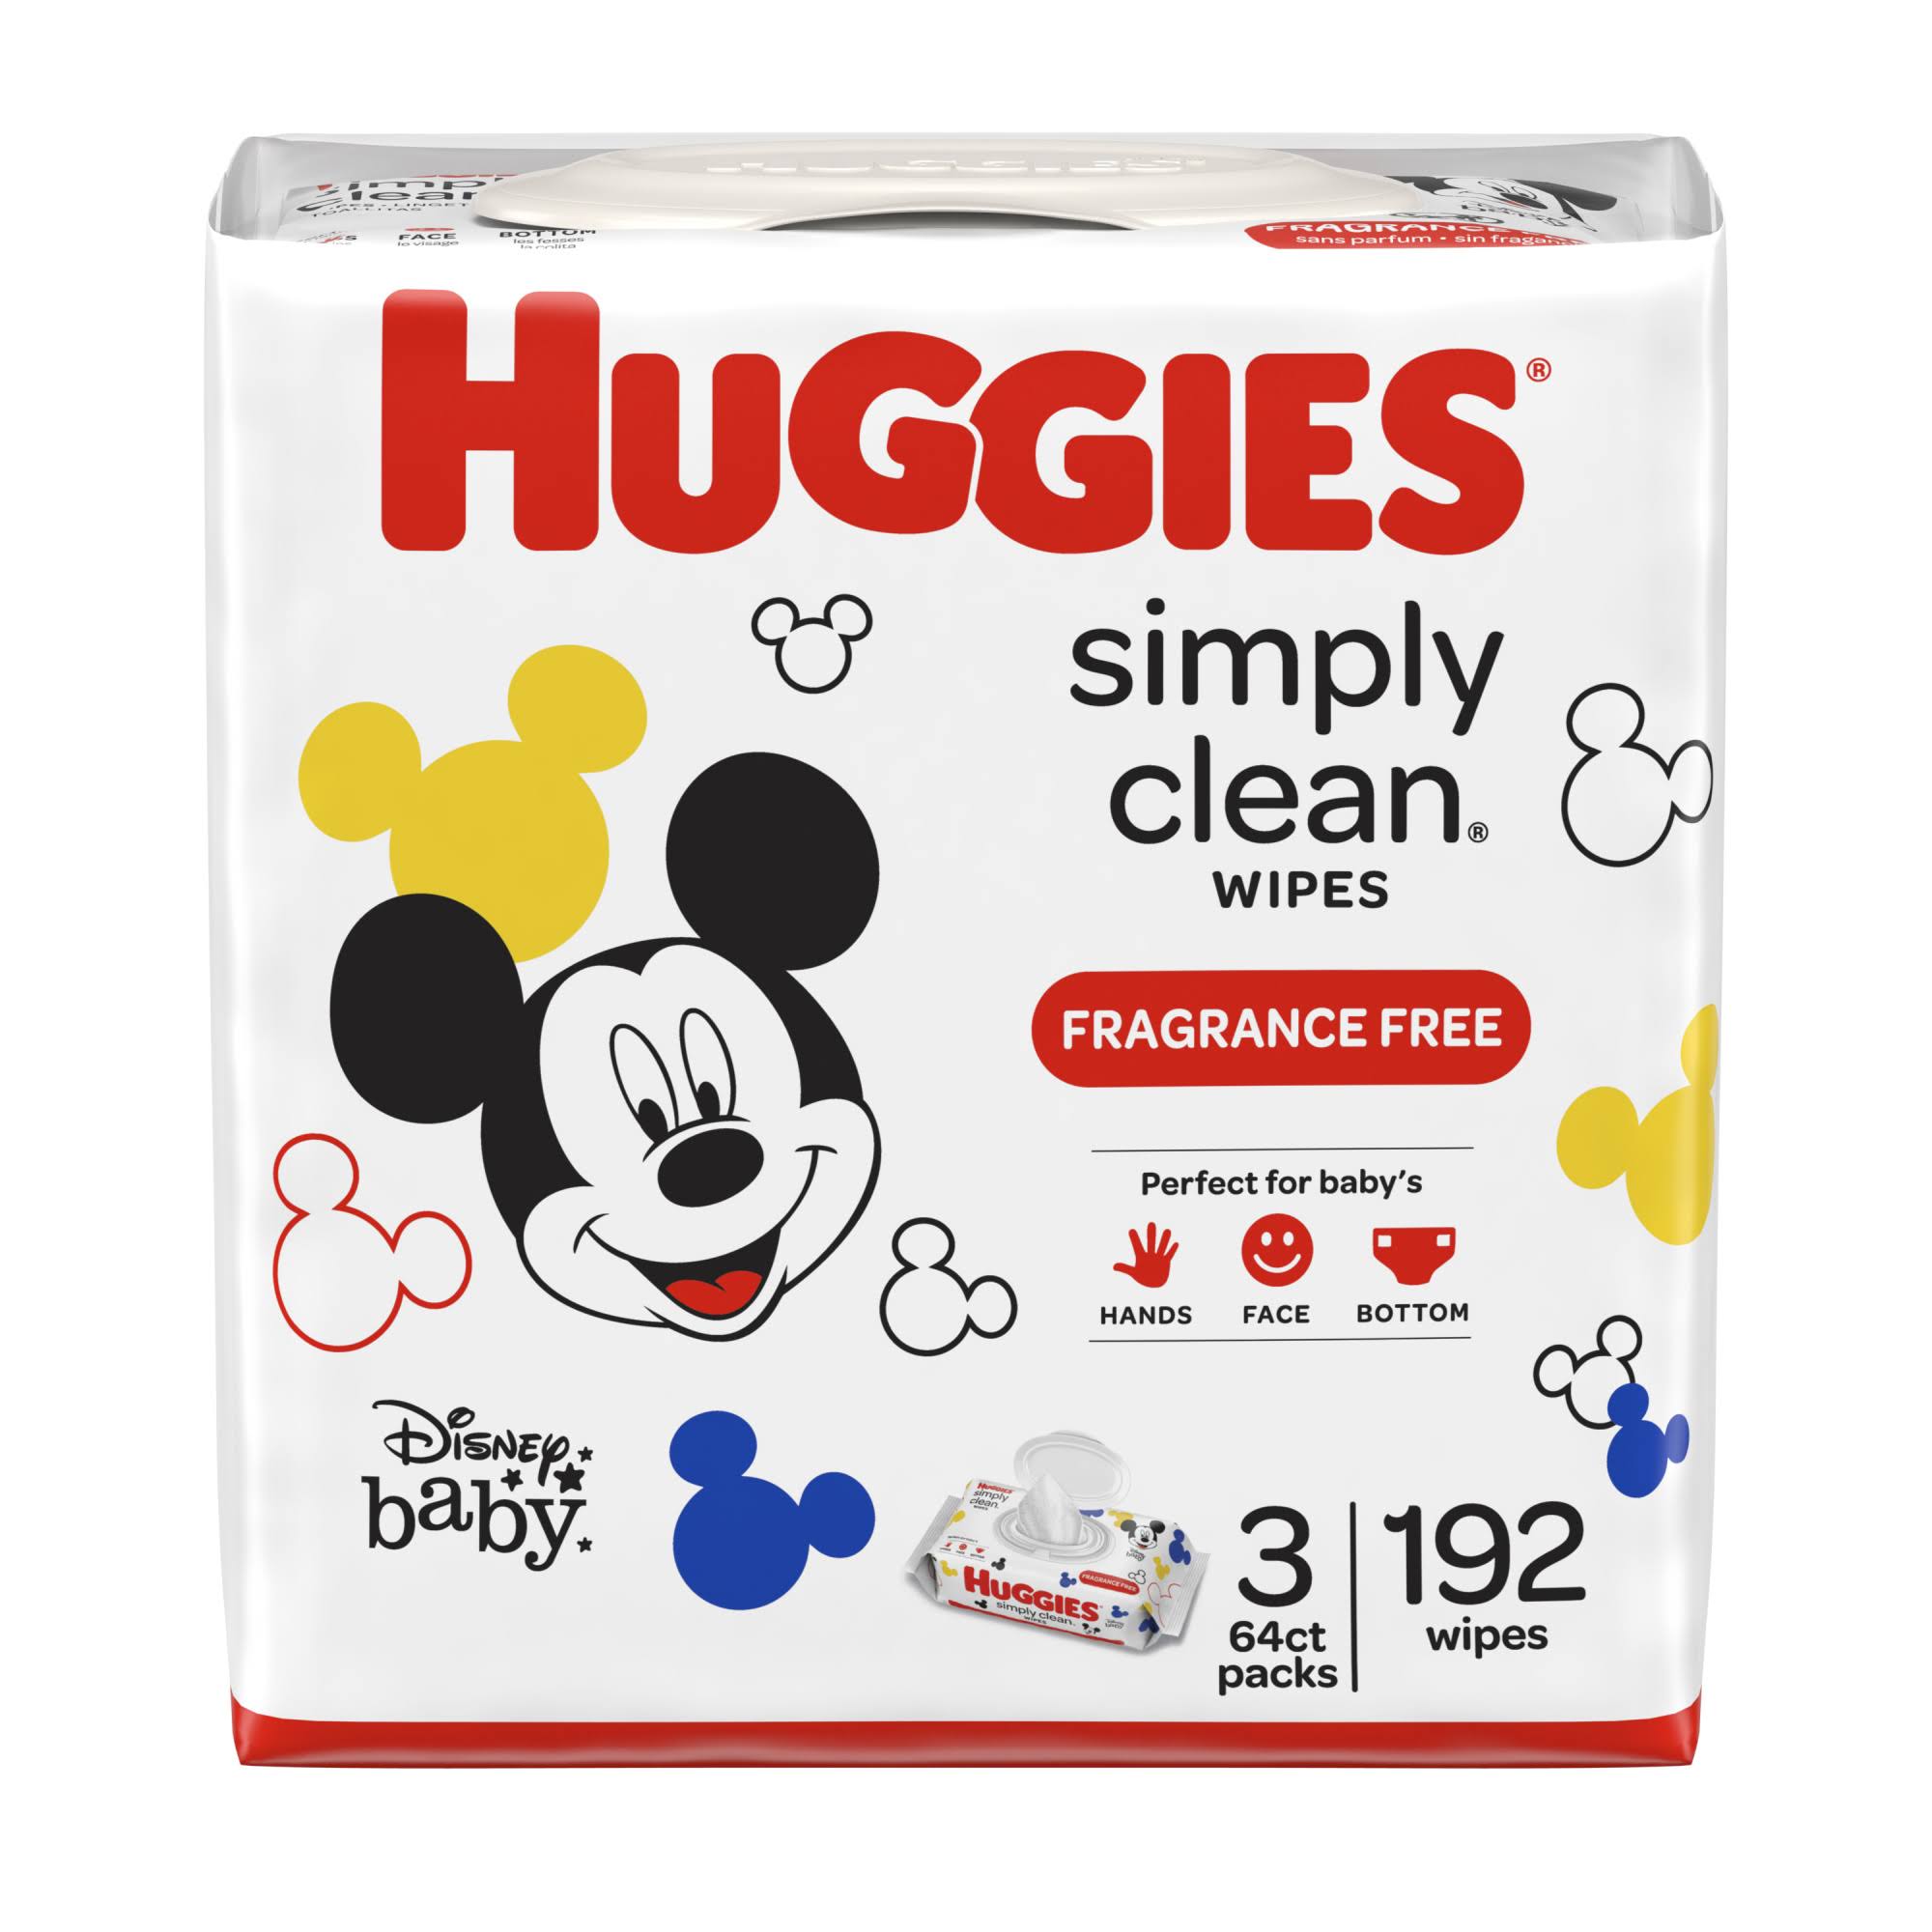 Huggies Simply Clean Fragrance-Free Baby Wipes - 193 Wipes, 3 Packs